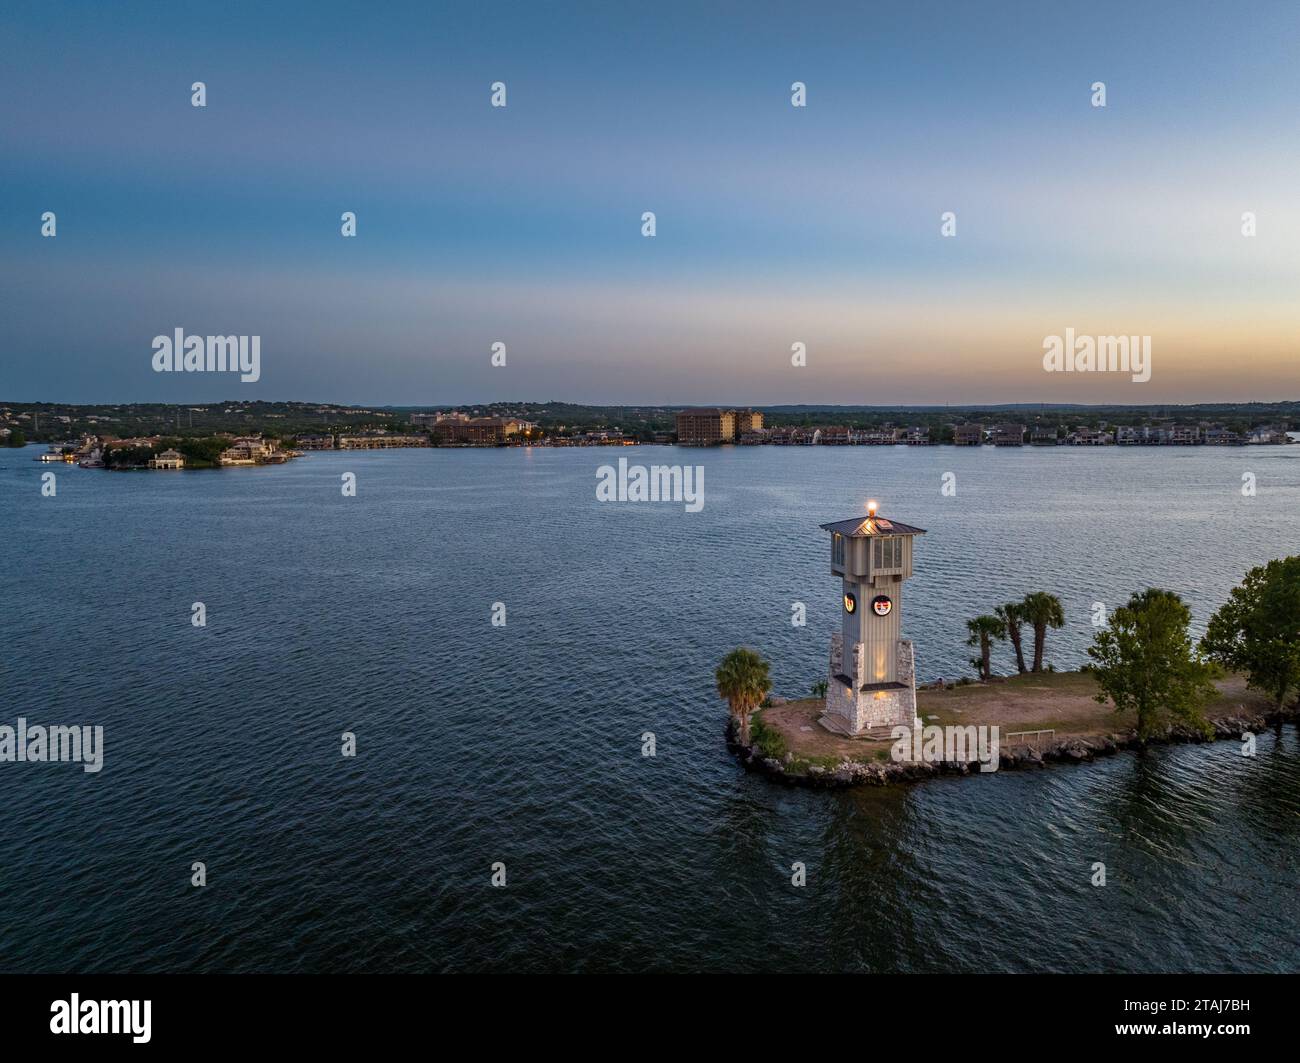 Une scène idyllique d'une île avec un phare de Horseshoe Bay sur un plan d'eau tranquille Banque D'Images